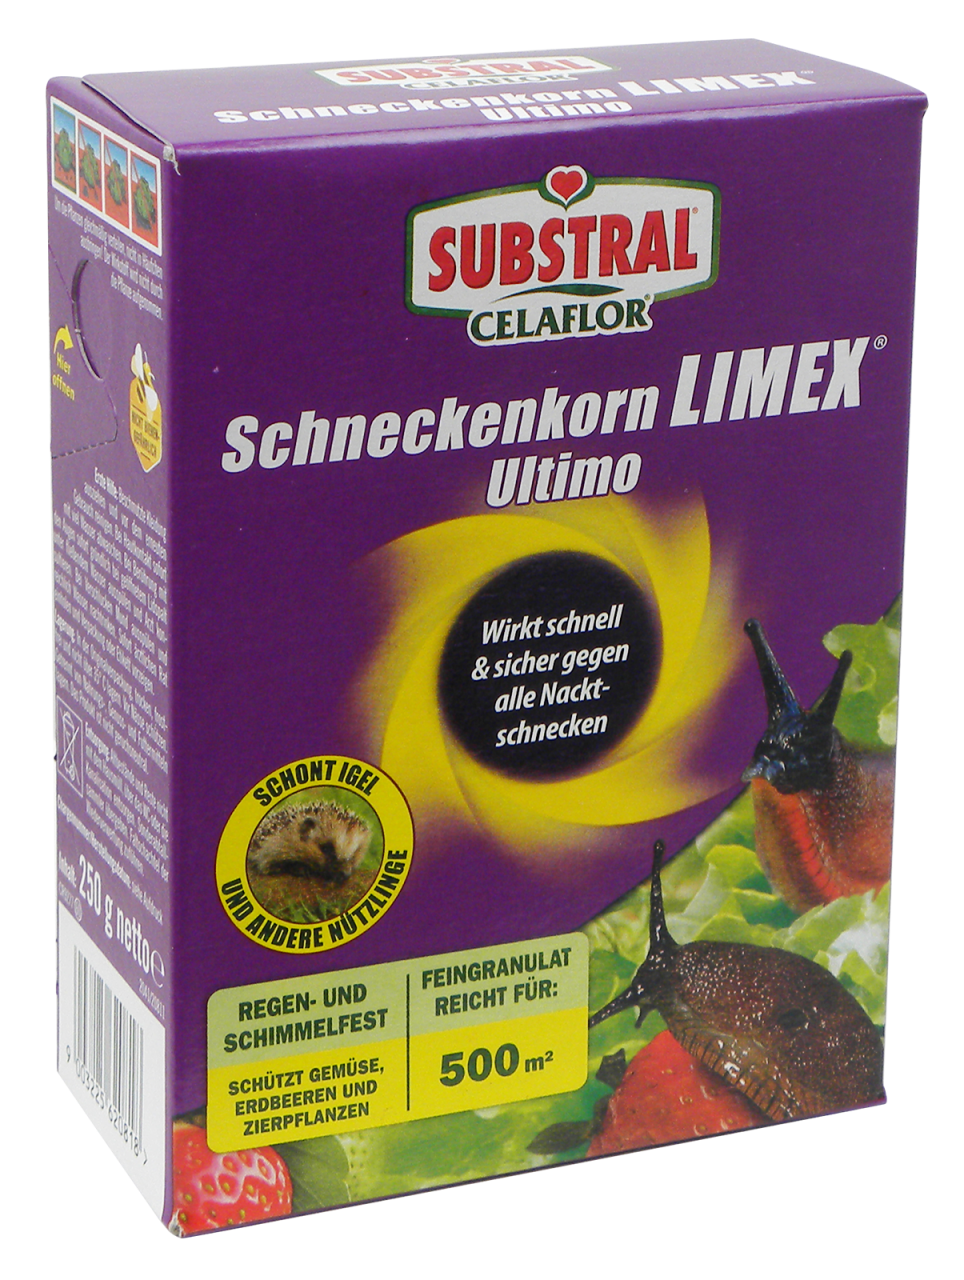 Schneckenkorn Limex Ultimo, 250 g *